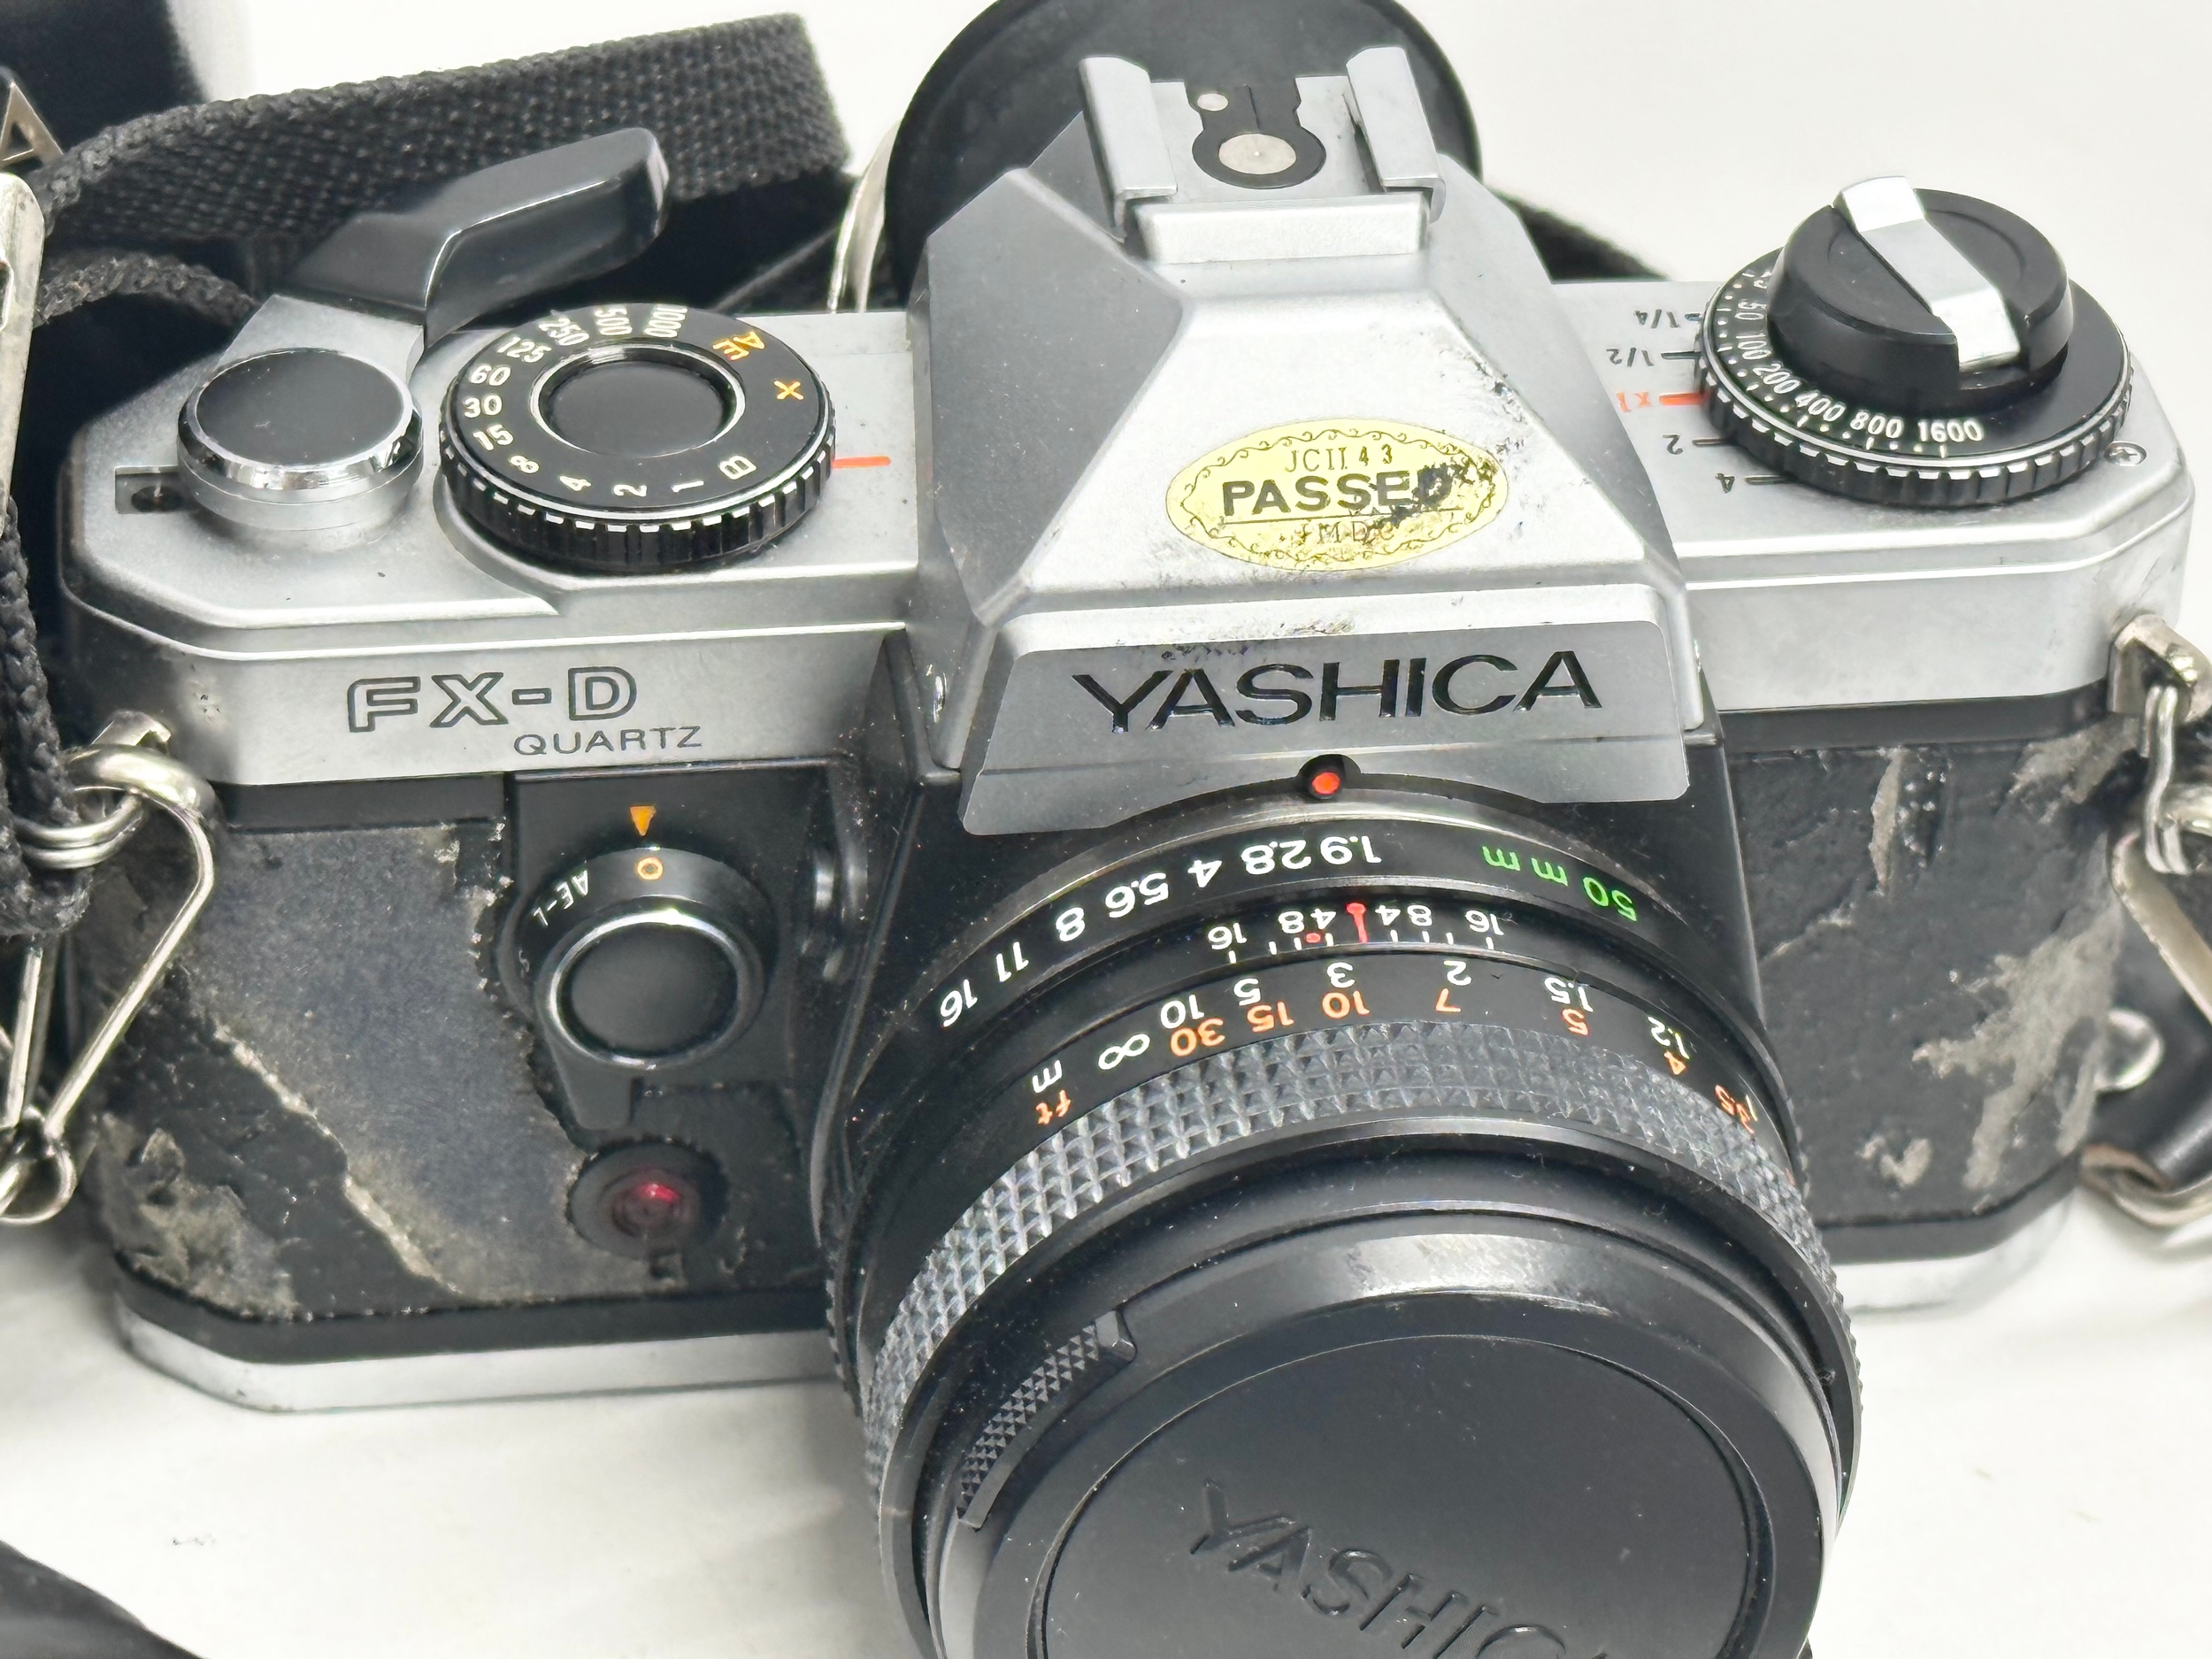 2 Yashica cameras. A Yashica 300 Auto Focus camera with case and book. A Yashica FX-D Quartz - Image 4 of 4